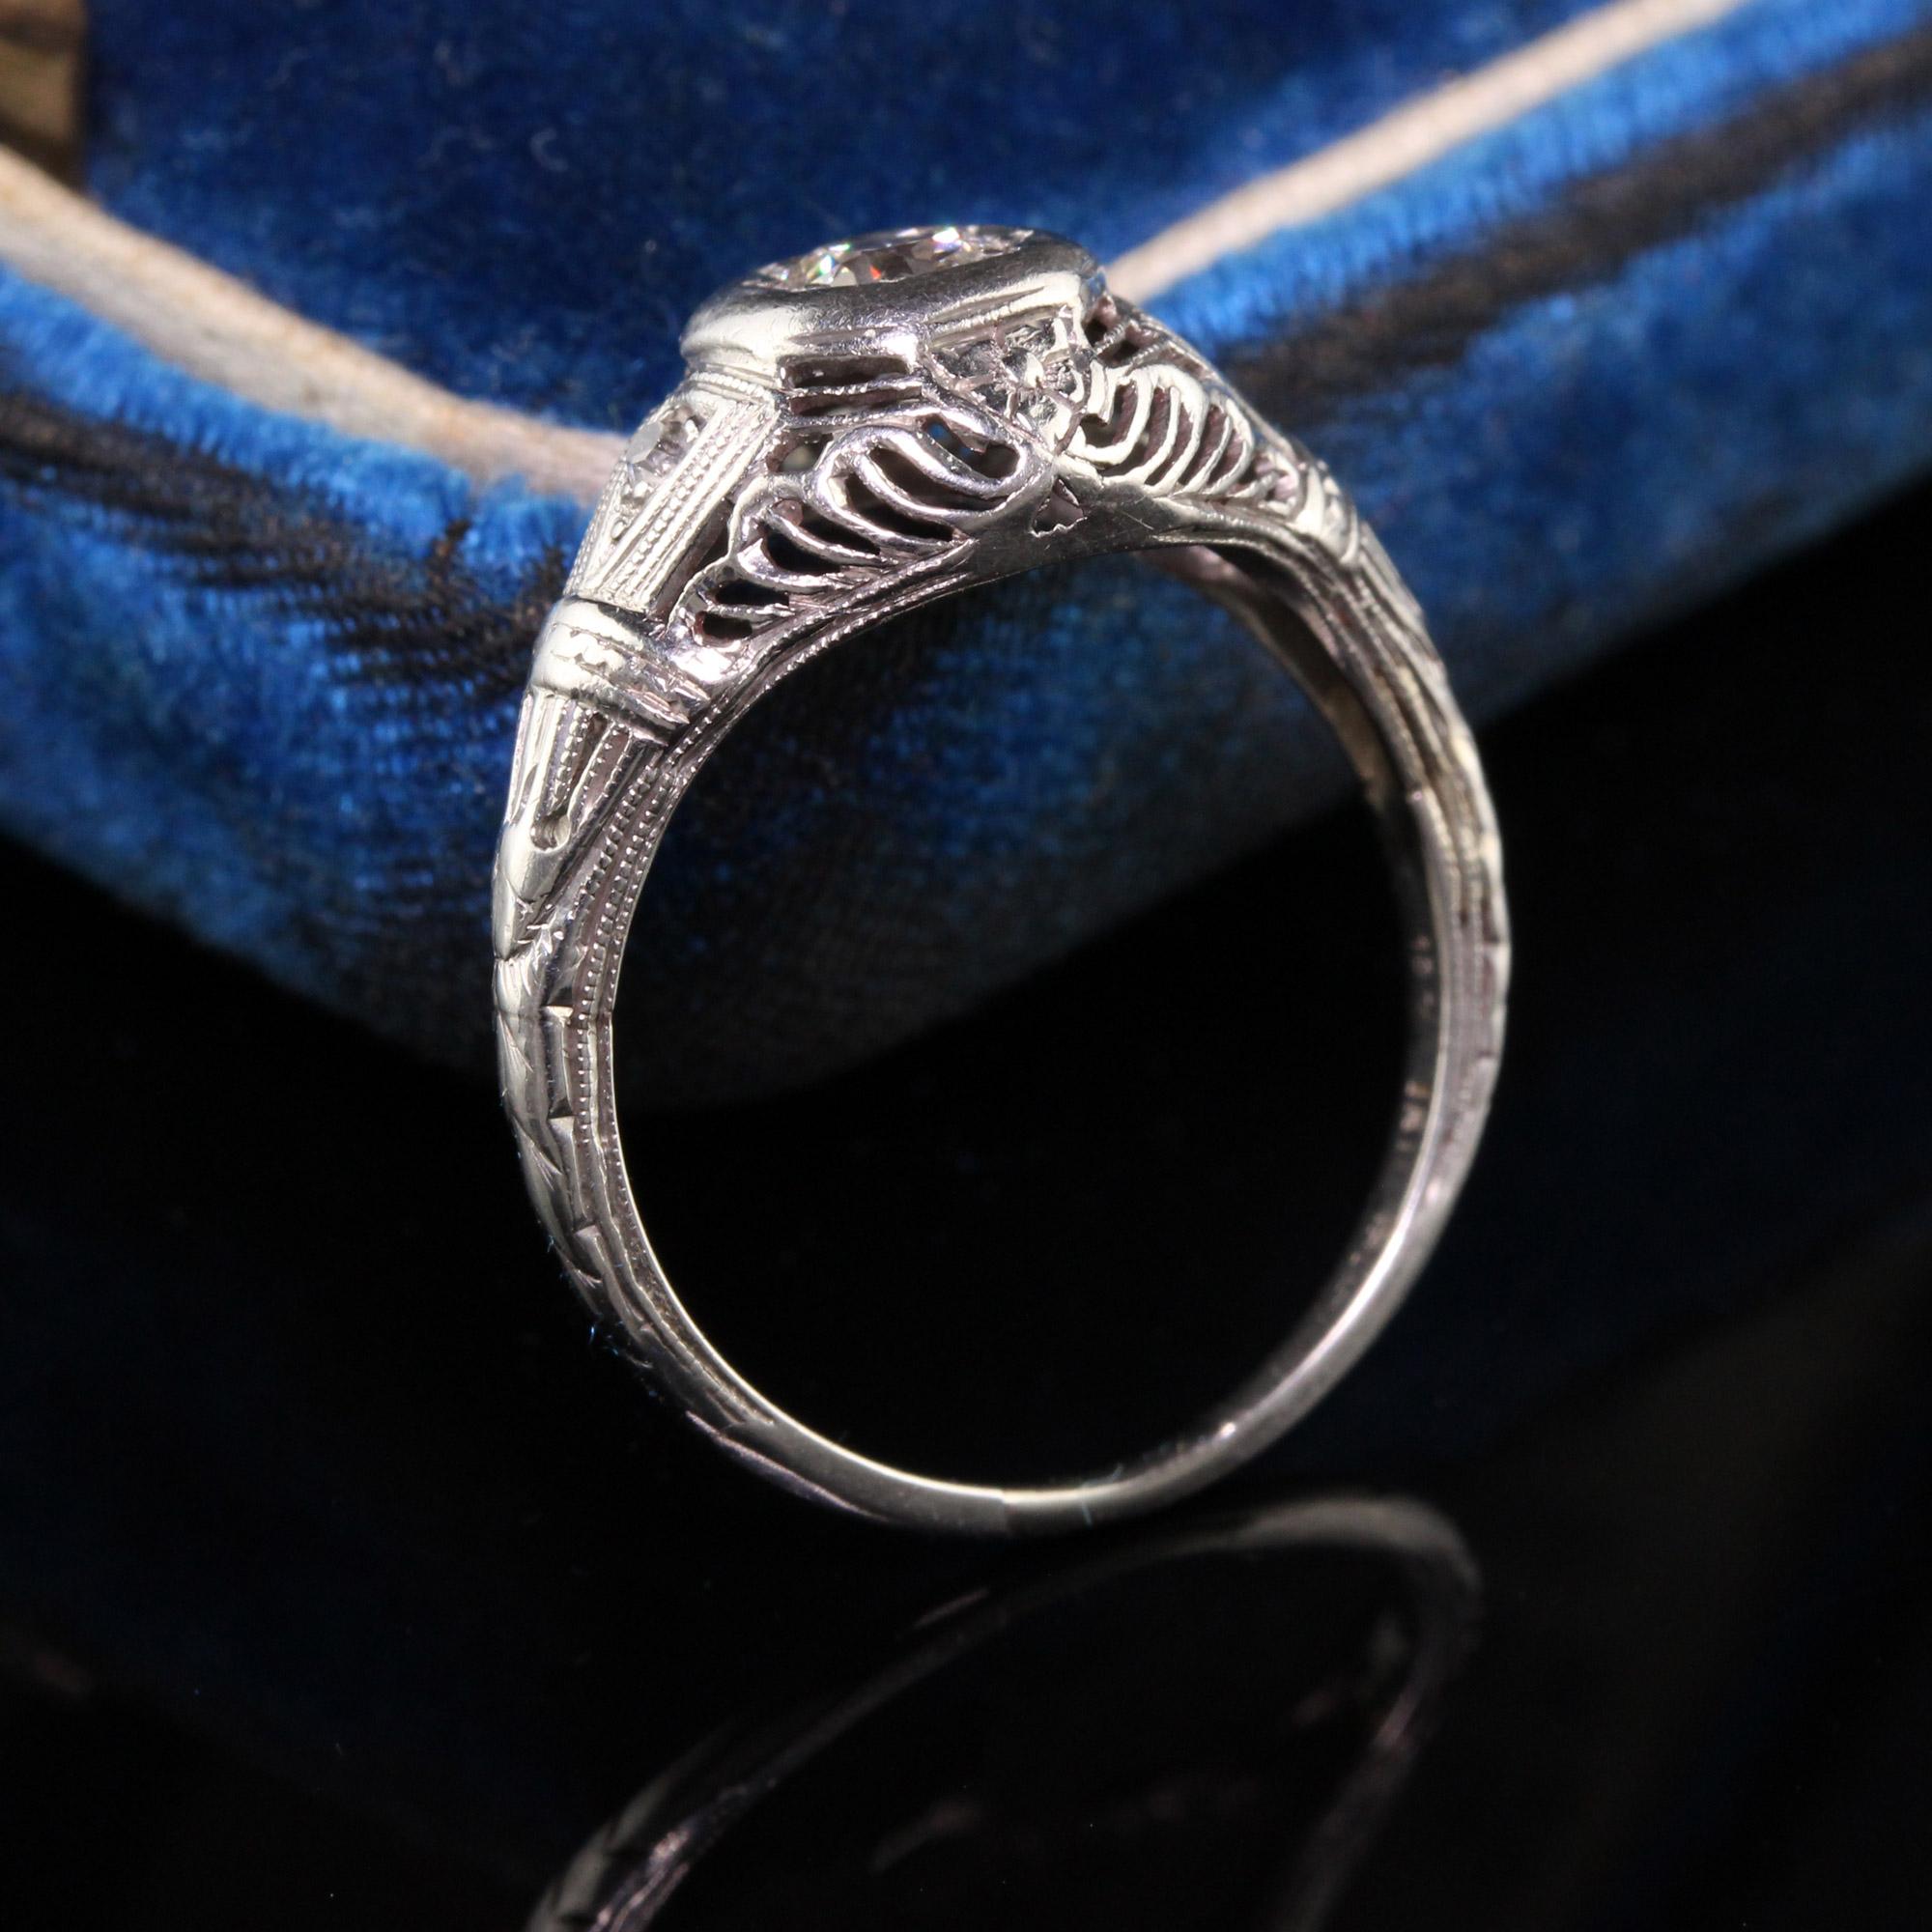 Beautiful Antique Art Deco Platinum Old European Diamond Filigree Engagement Ring. This beautiful engagement ring has a bright white old european diamond set in a beautiful art deco platinum filigree mounting.

Item #R0809

Metal: Platinum

Diamond: